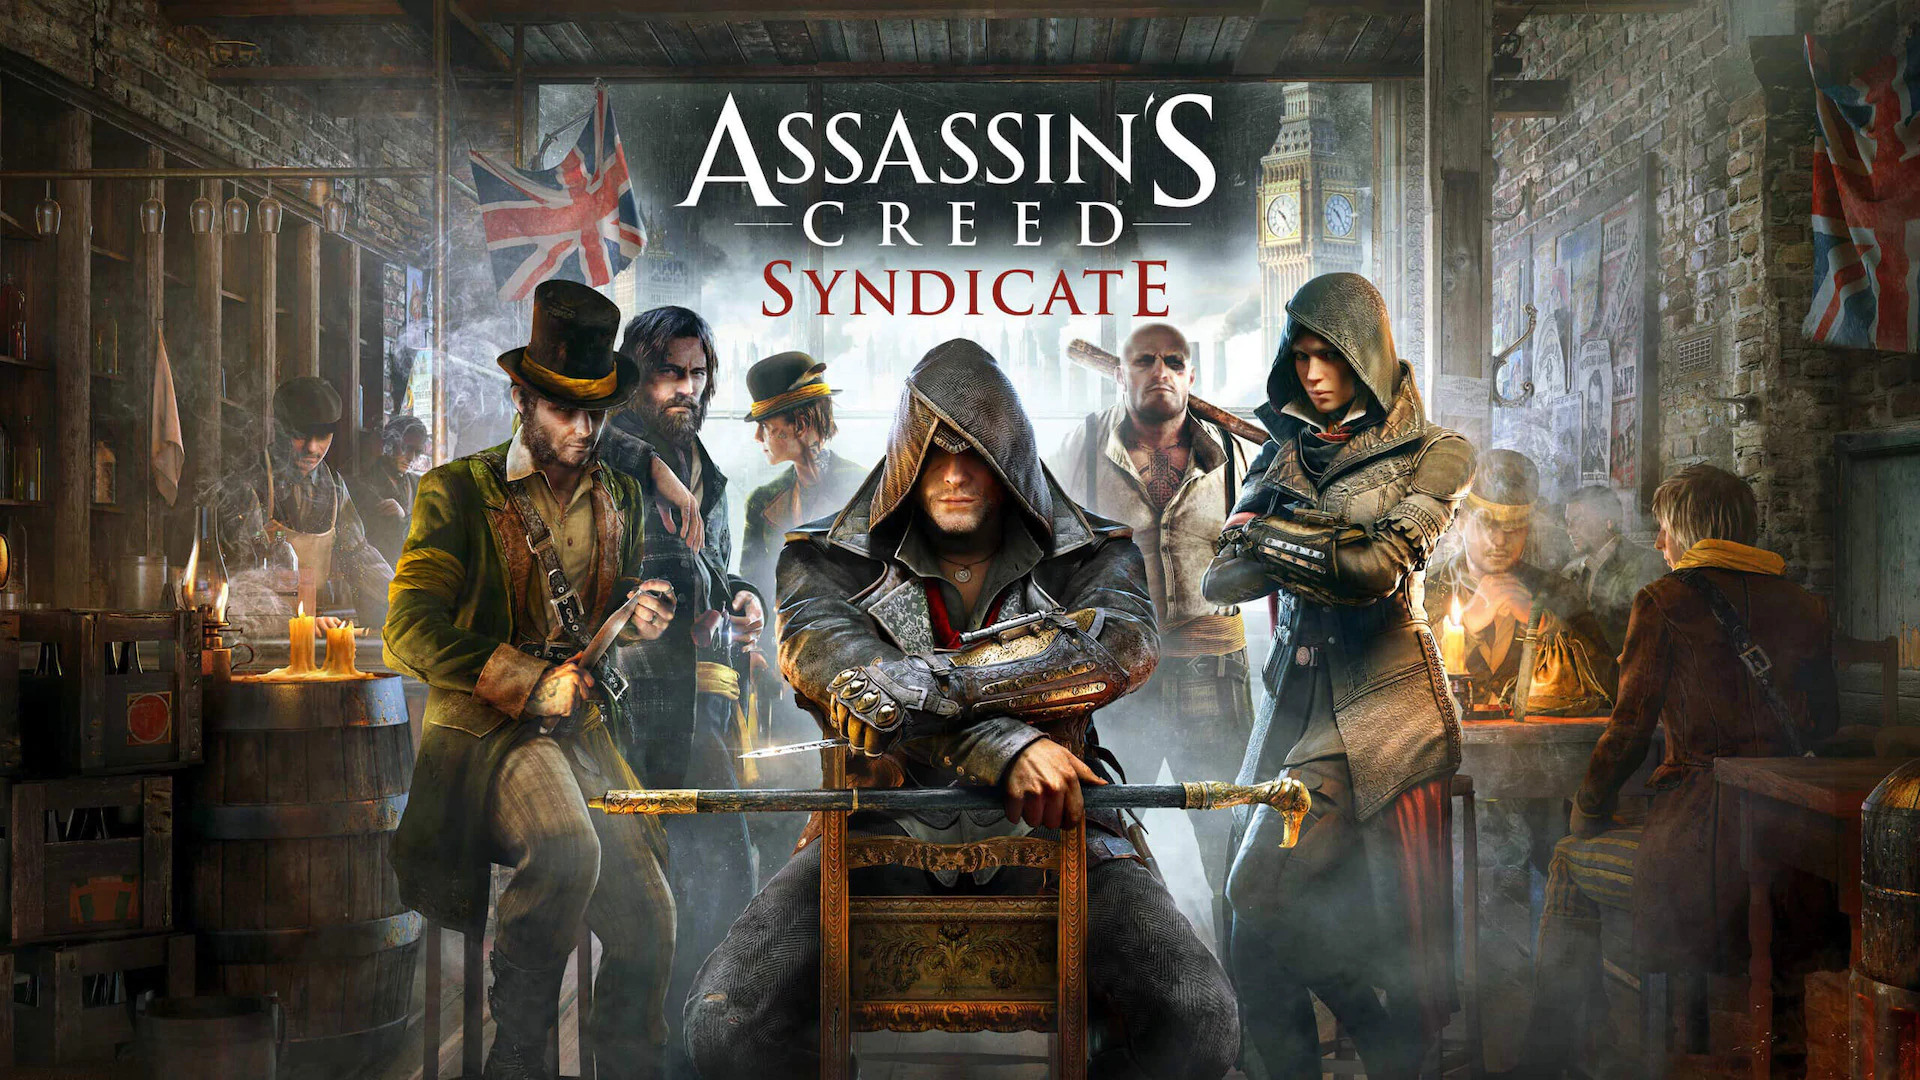 Nhanh tay lấy game Assassin’s Creed Syndicate hiện đang được Epic Games tặng miễn phí